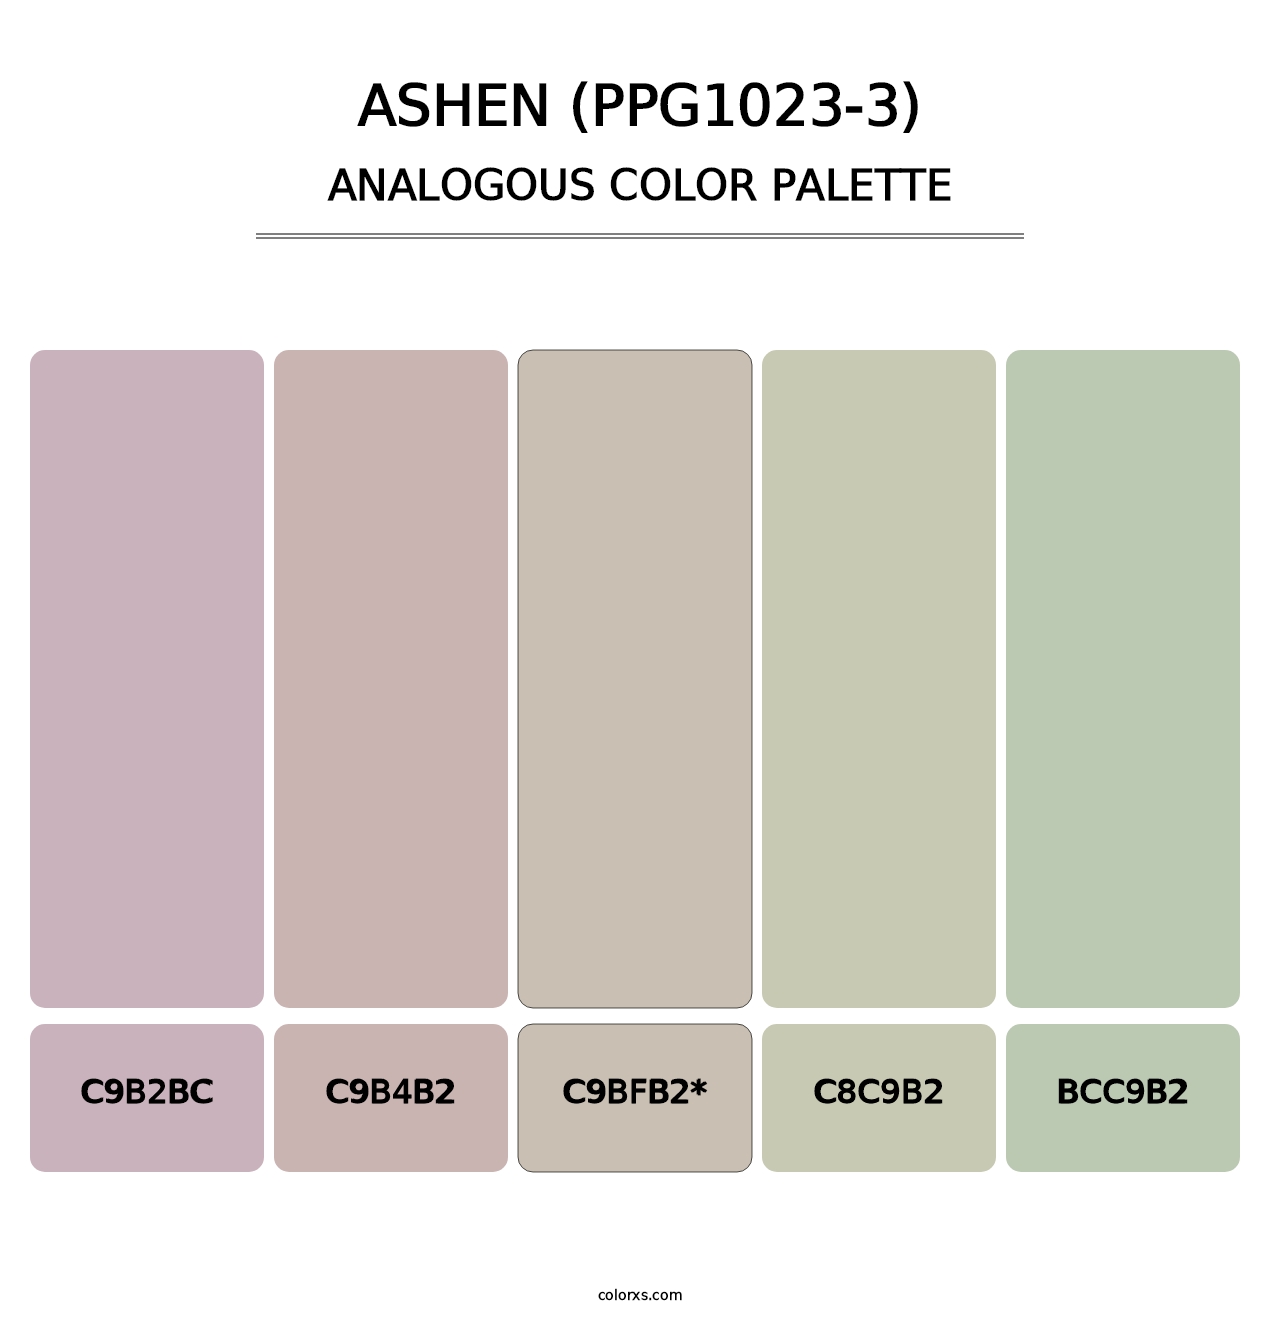 Ashen (PPG1023-3) - Analogous Color Palette